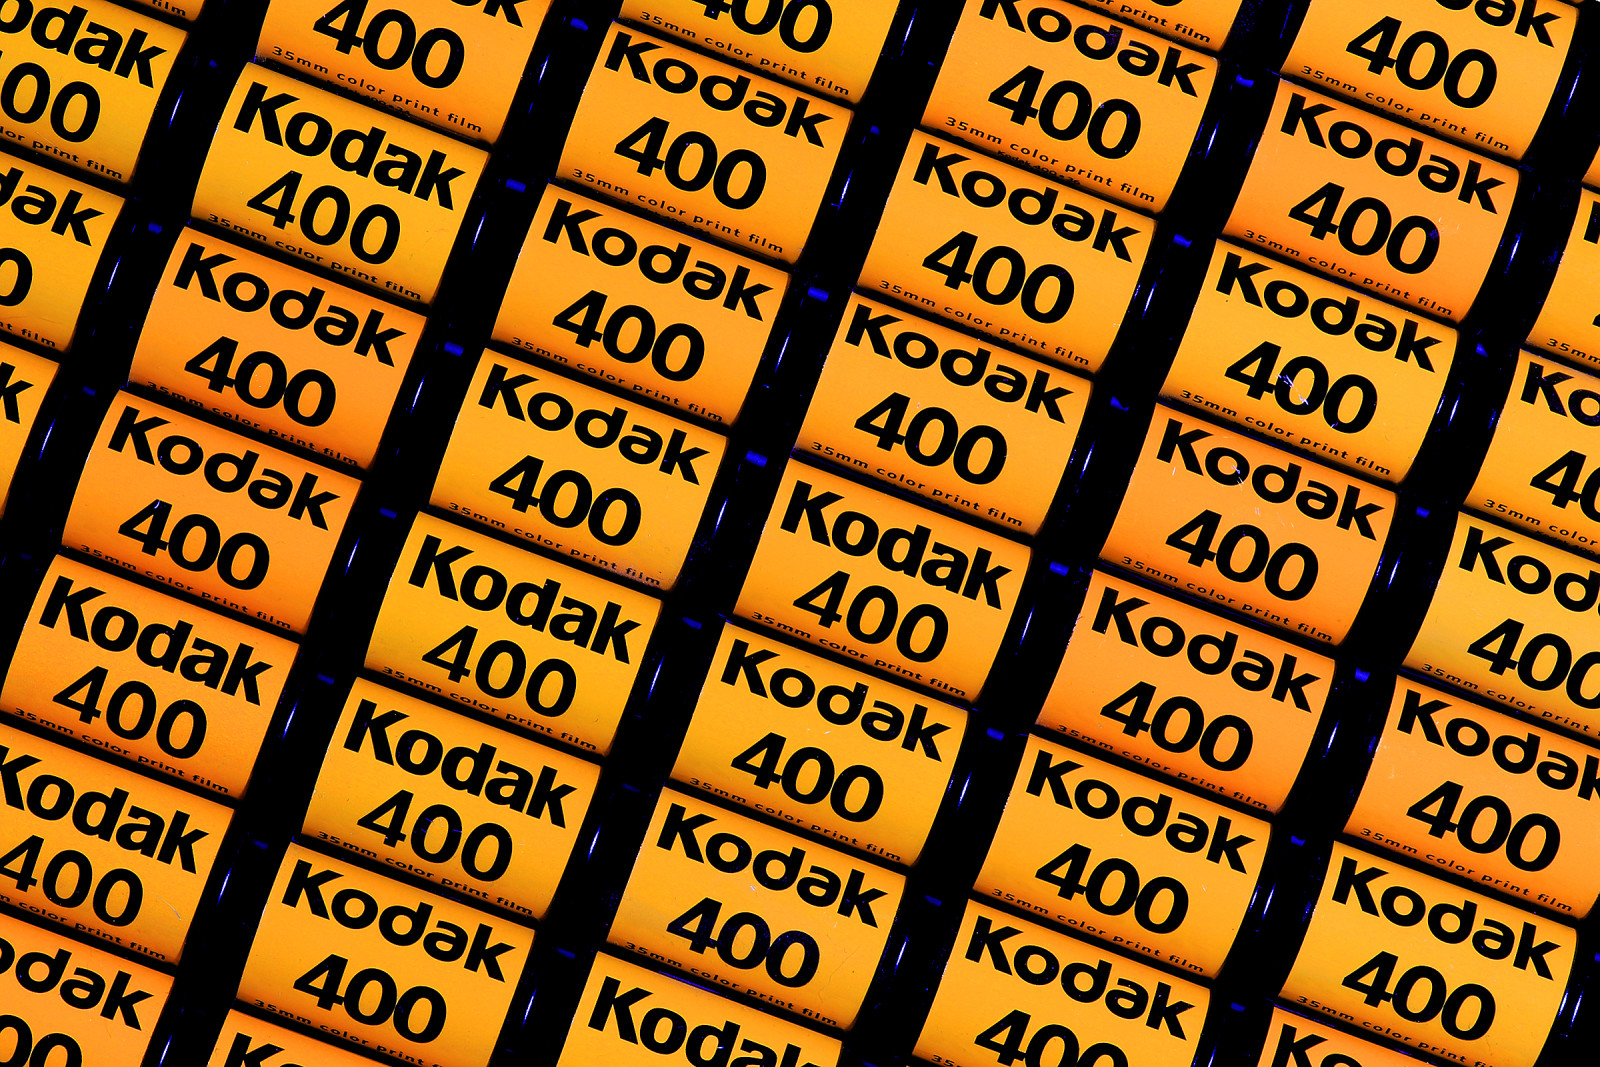 พื้นหลัง, แมโคร, มาก, ฟิล์ม, Kodak 400